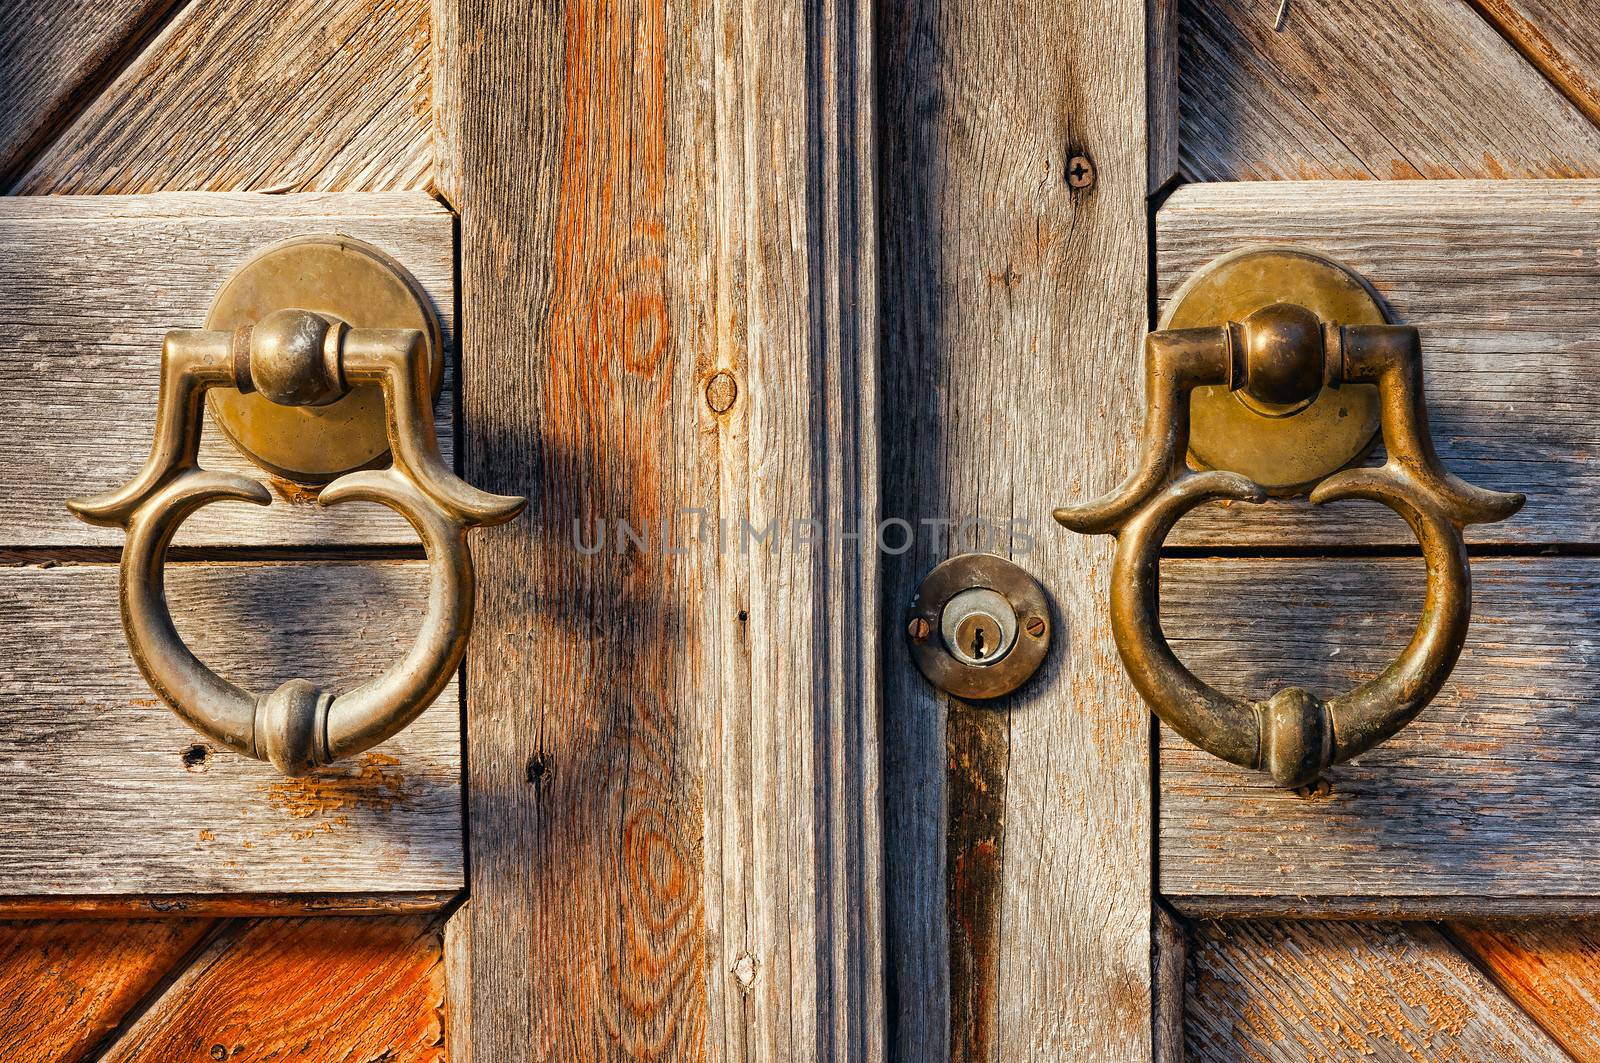 old brass door handles on wooden gate